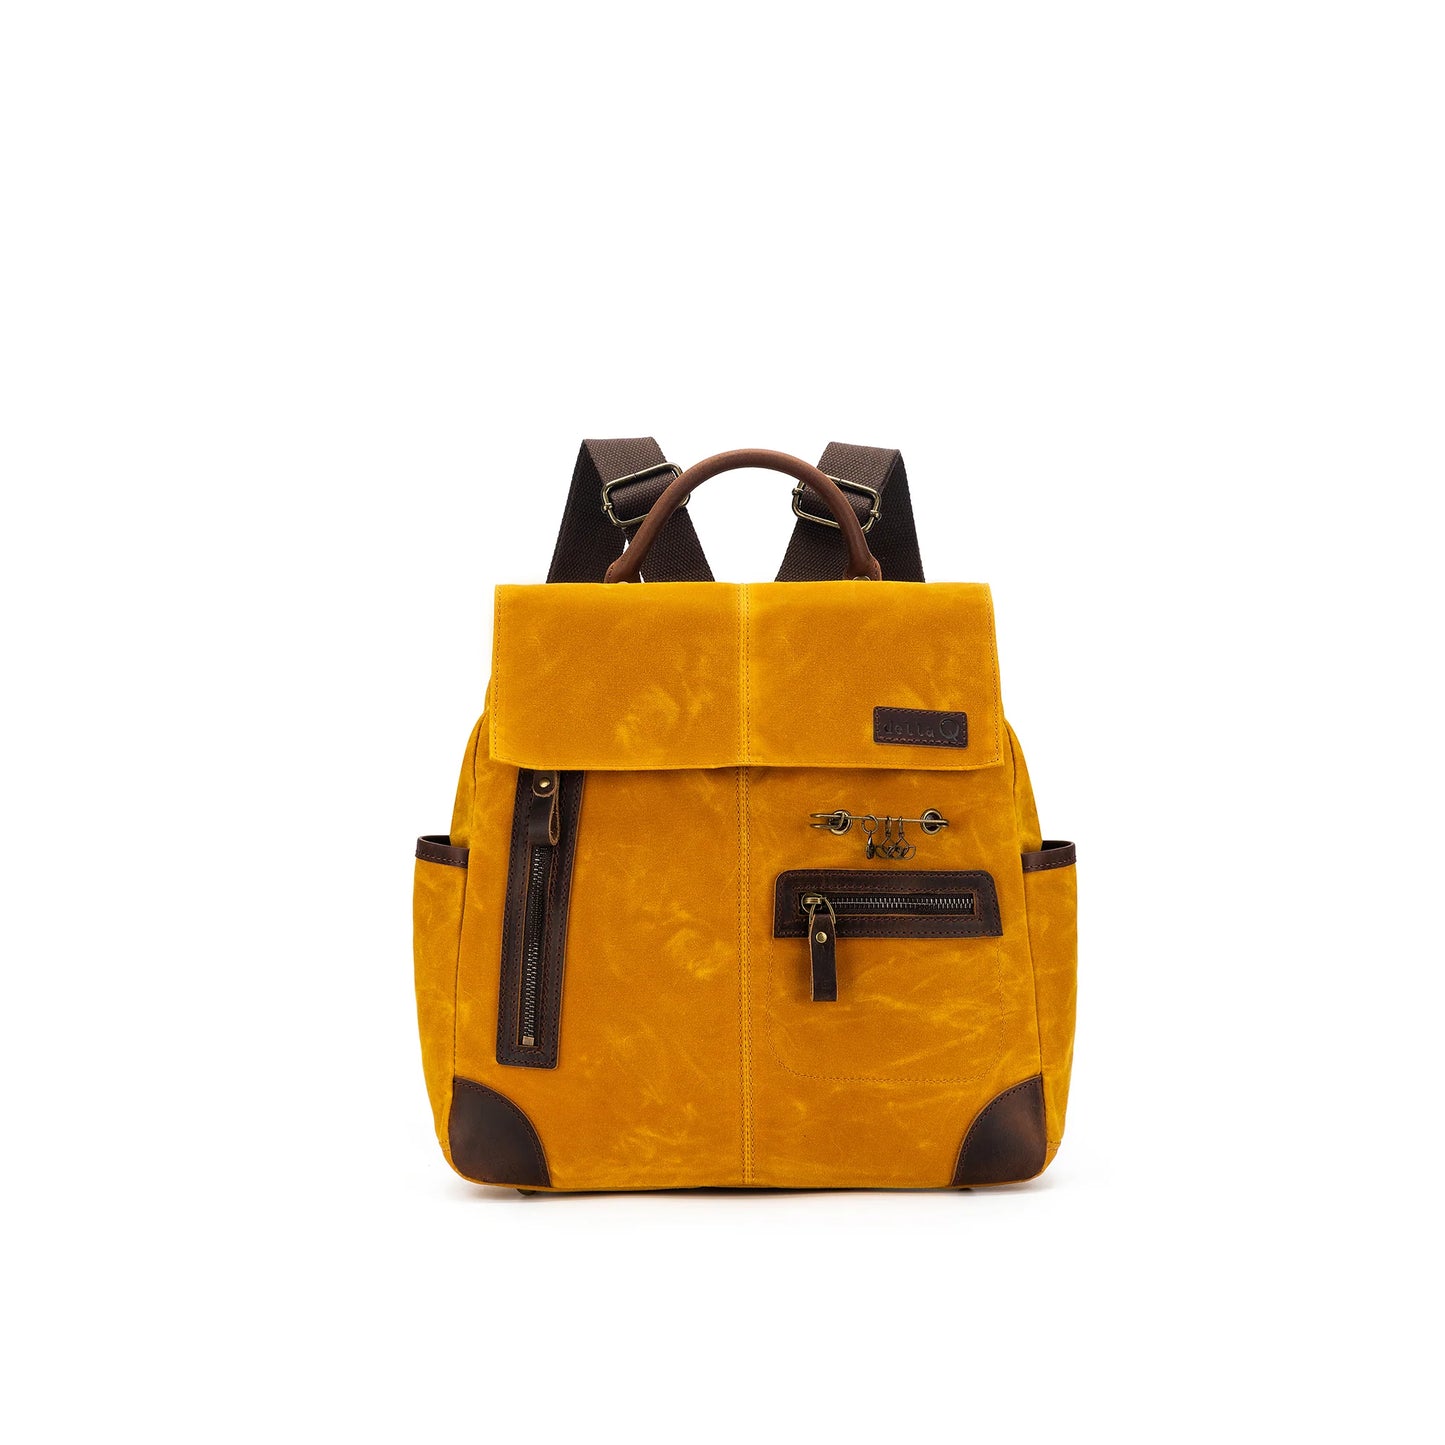 Maker's Midi Backpack by della q